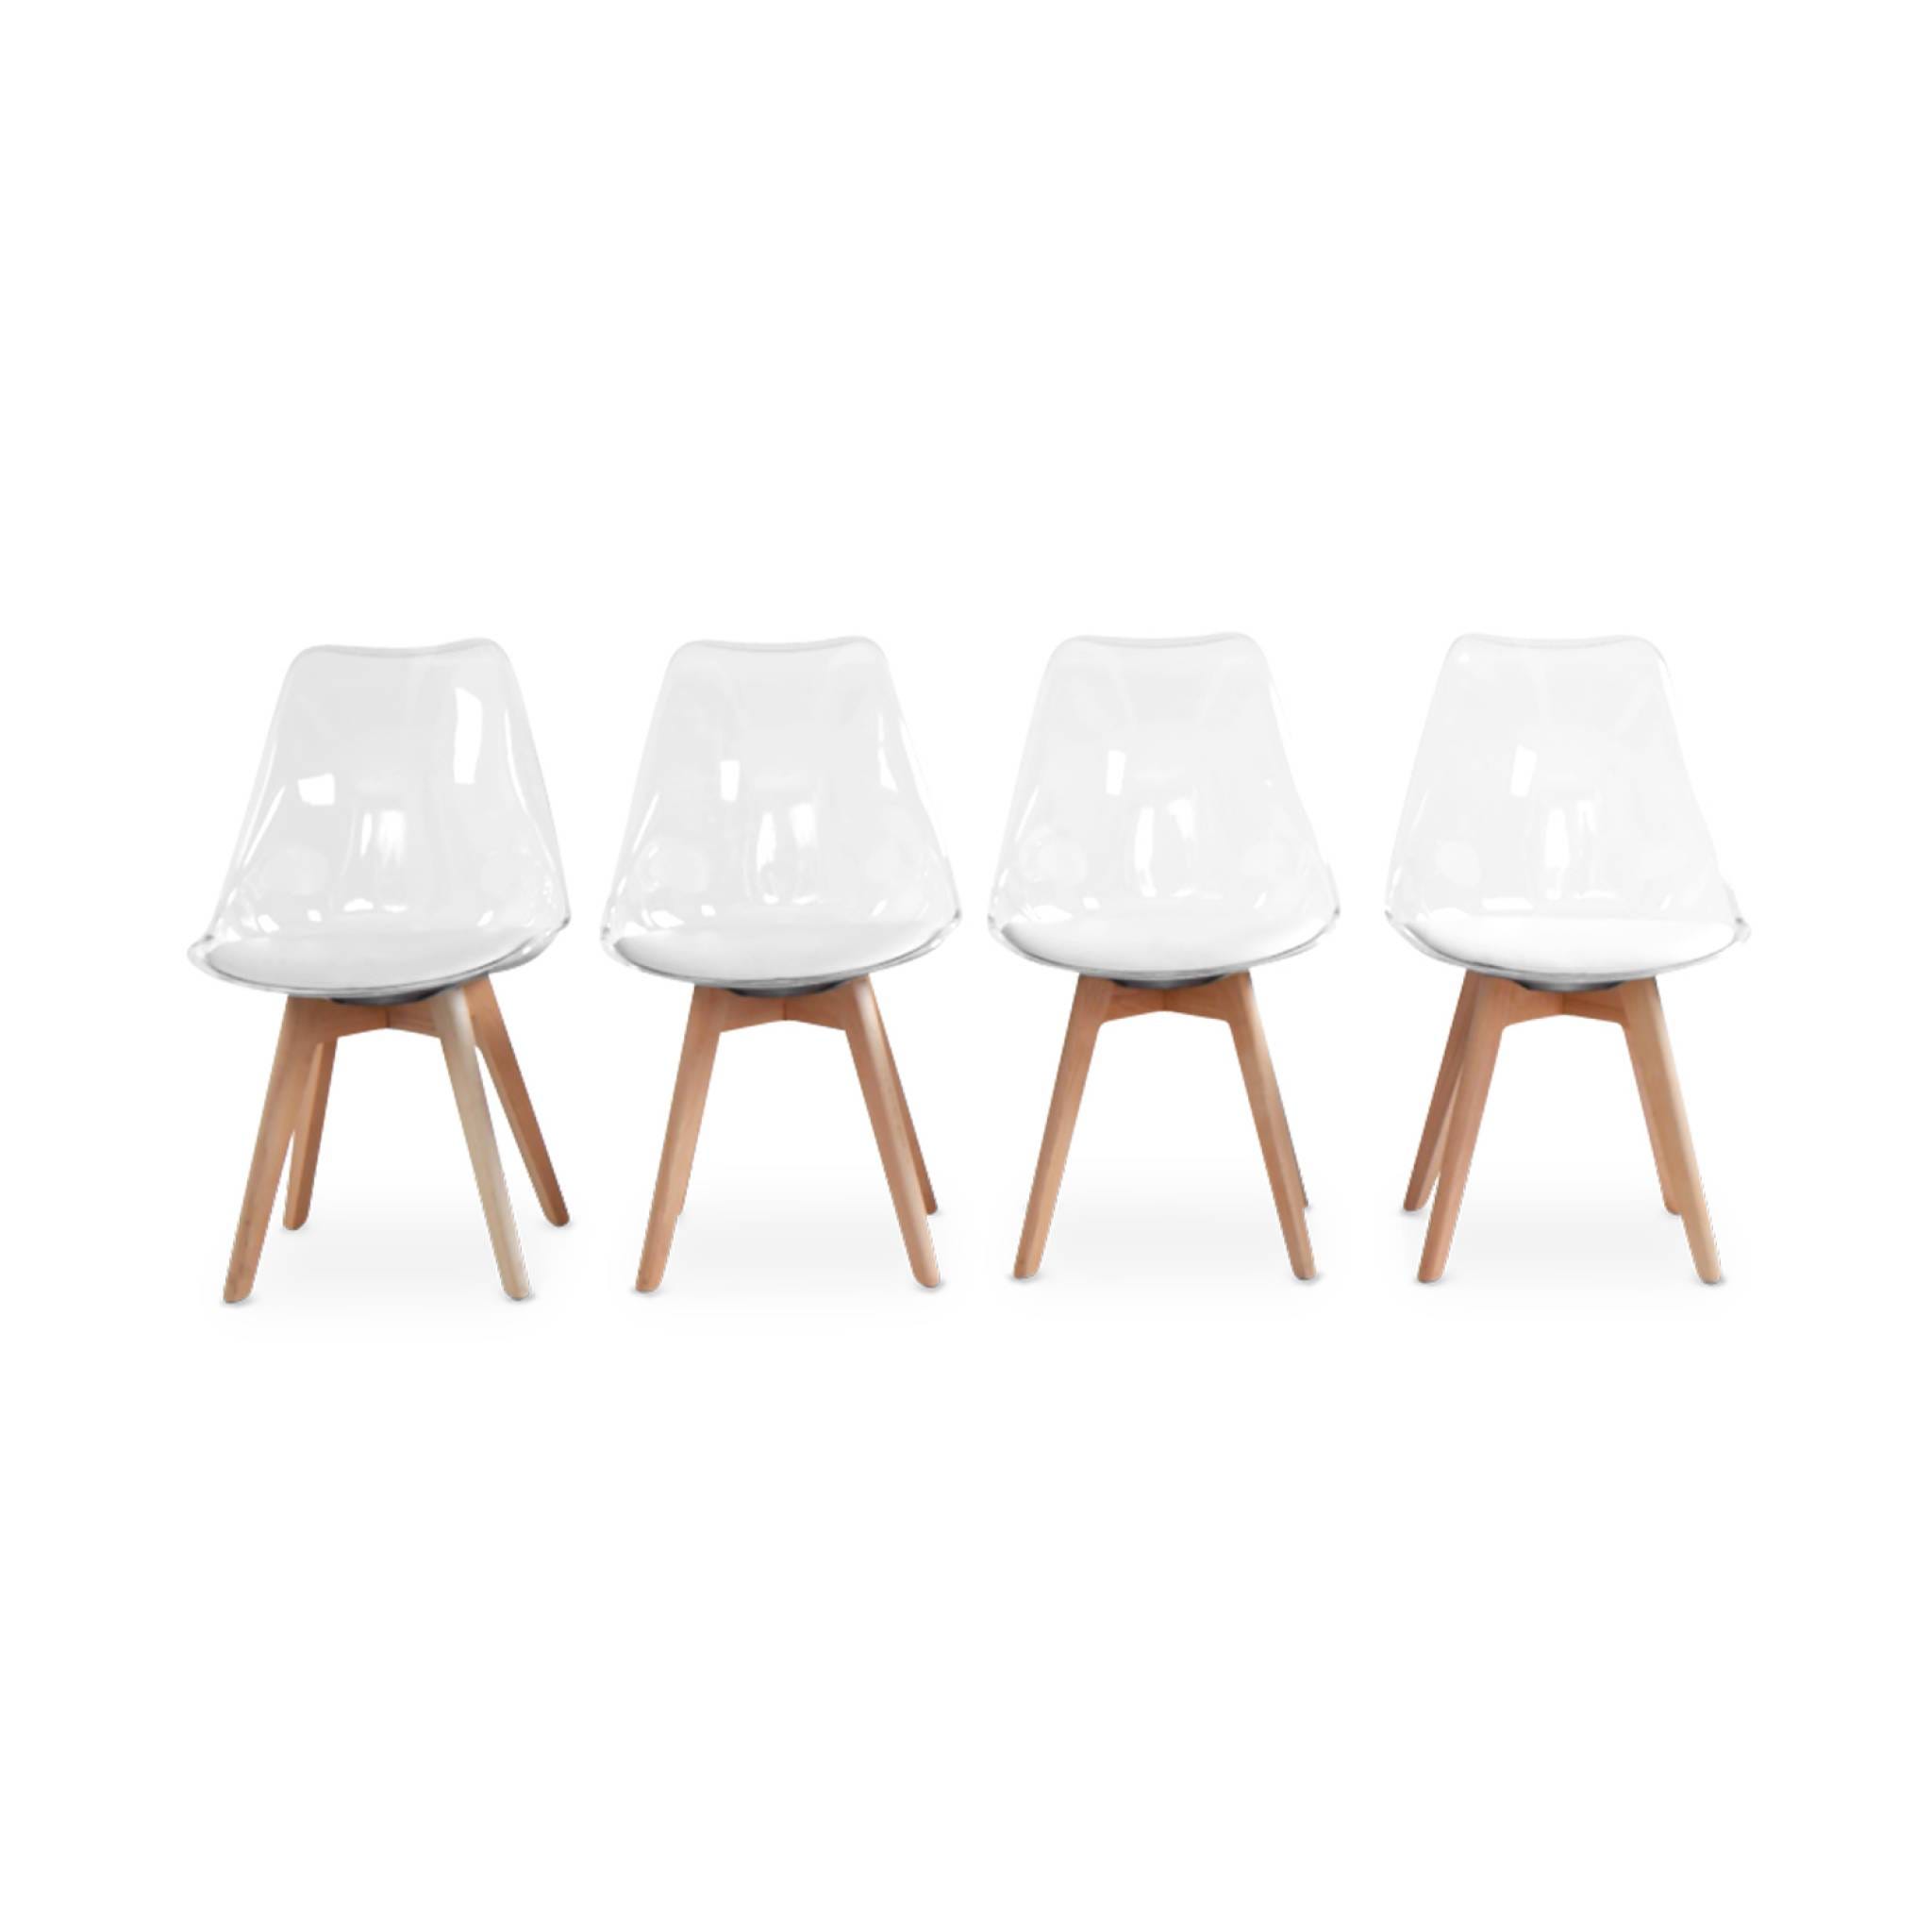 Lot de 4 chaises scandinaves - Lagertha - pieds bois. fauteuils 1 place.  coussin blanc. coque transparente